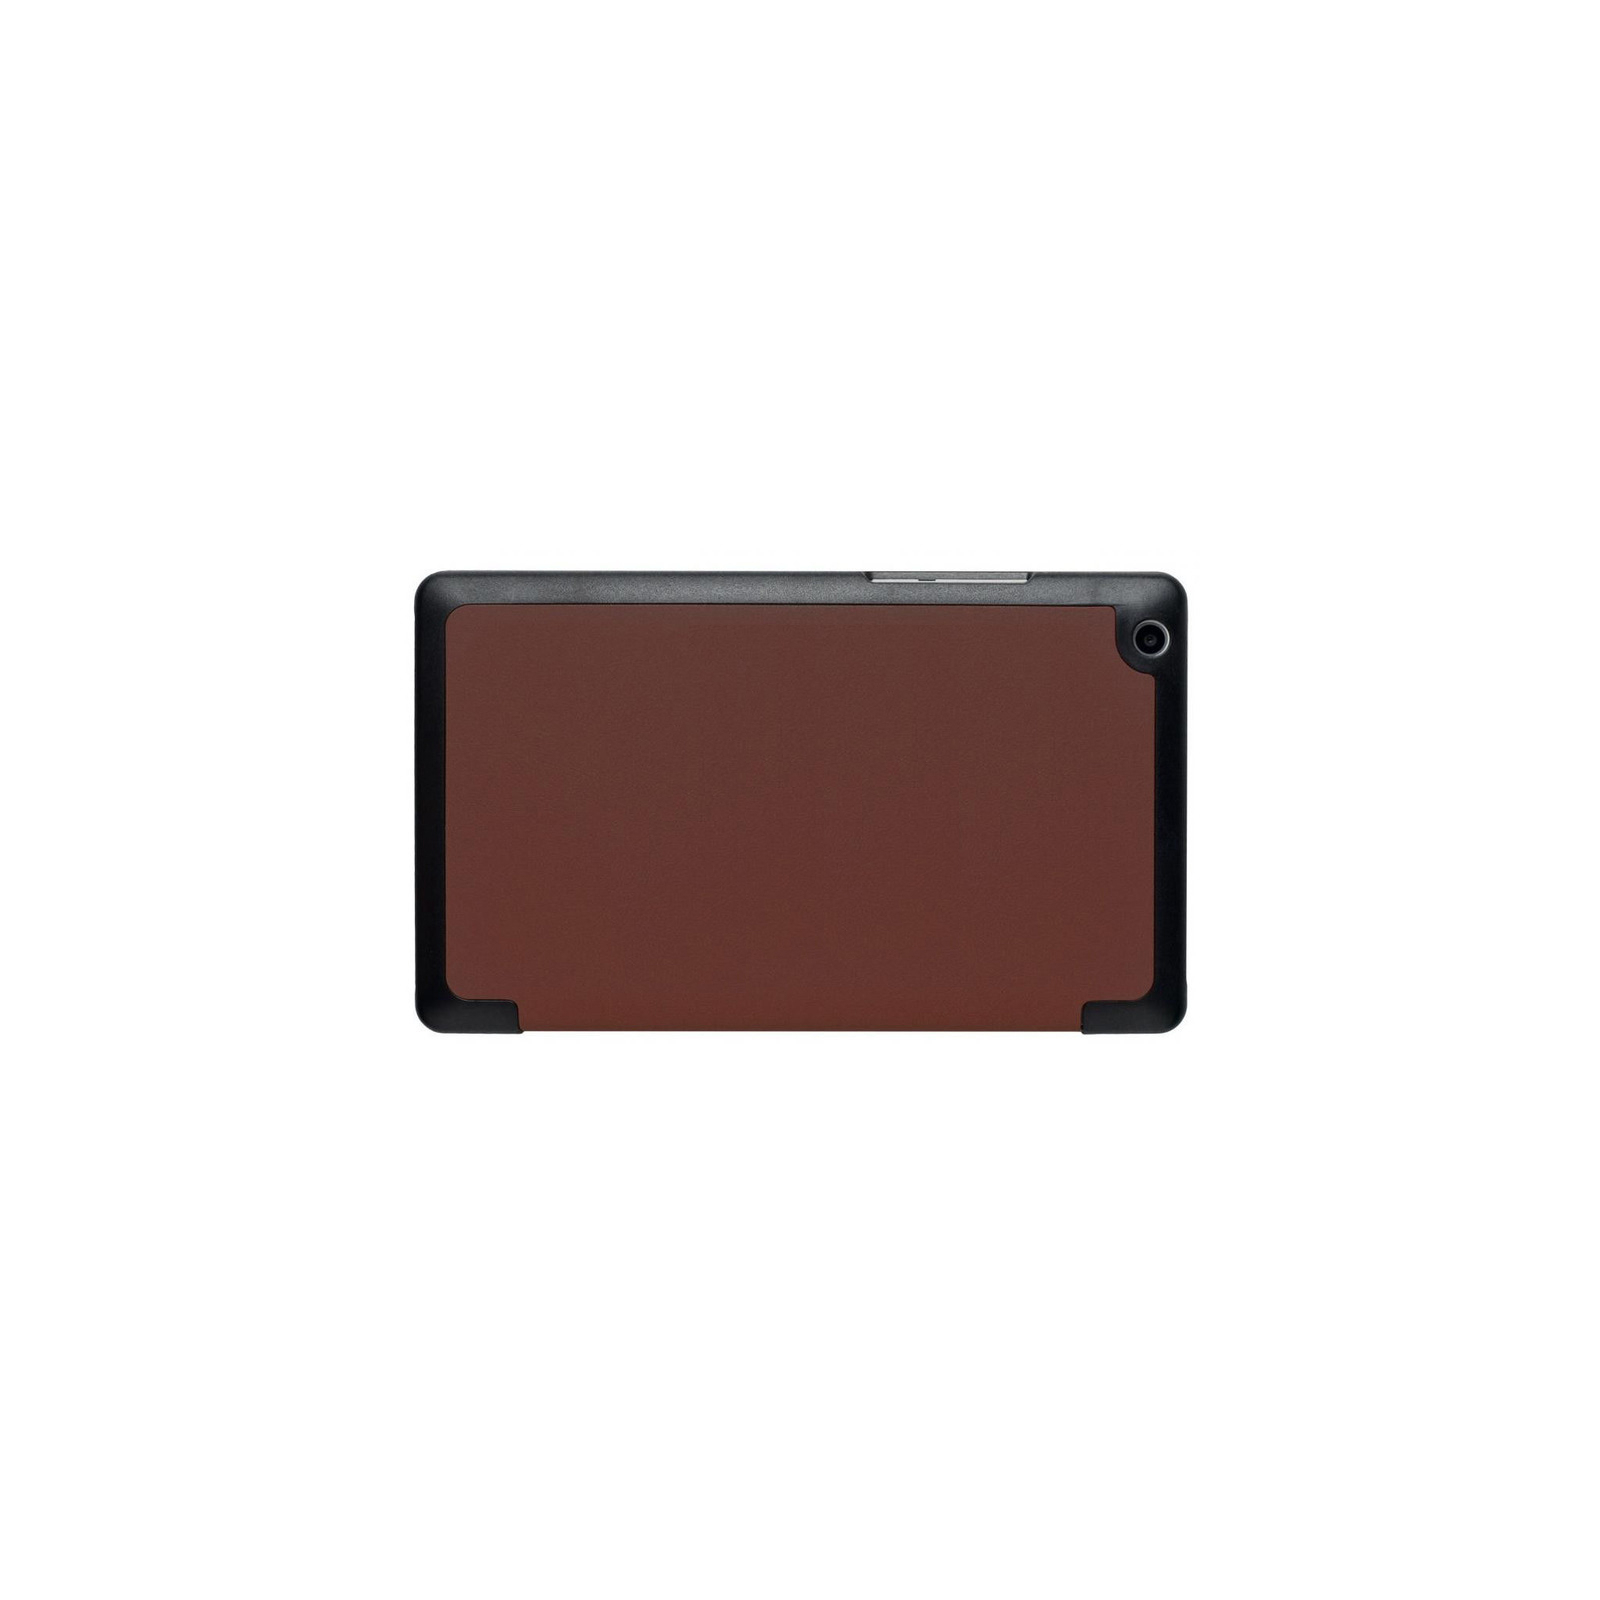 Чохол до планшета Grand-X для Lenovo Tab 3 710F Brown (LTC - LT3710FBR) зображення 2